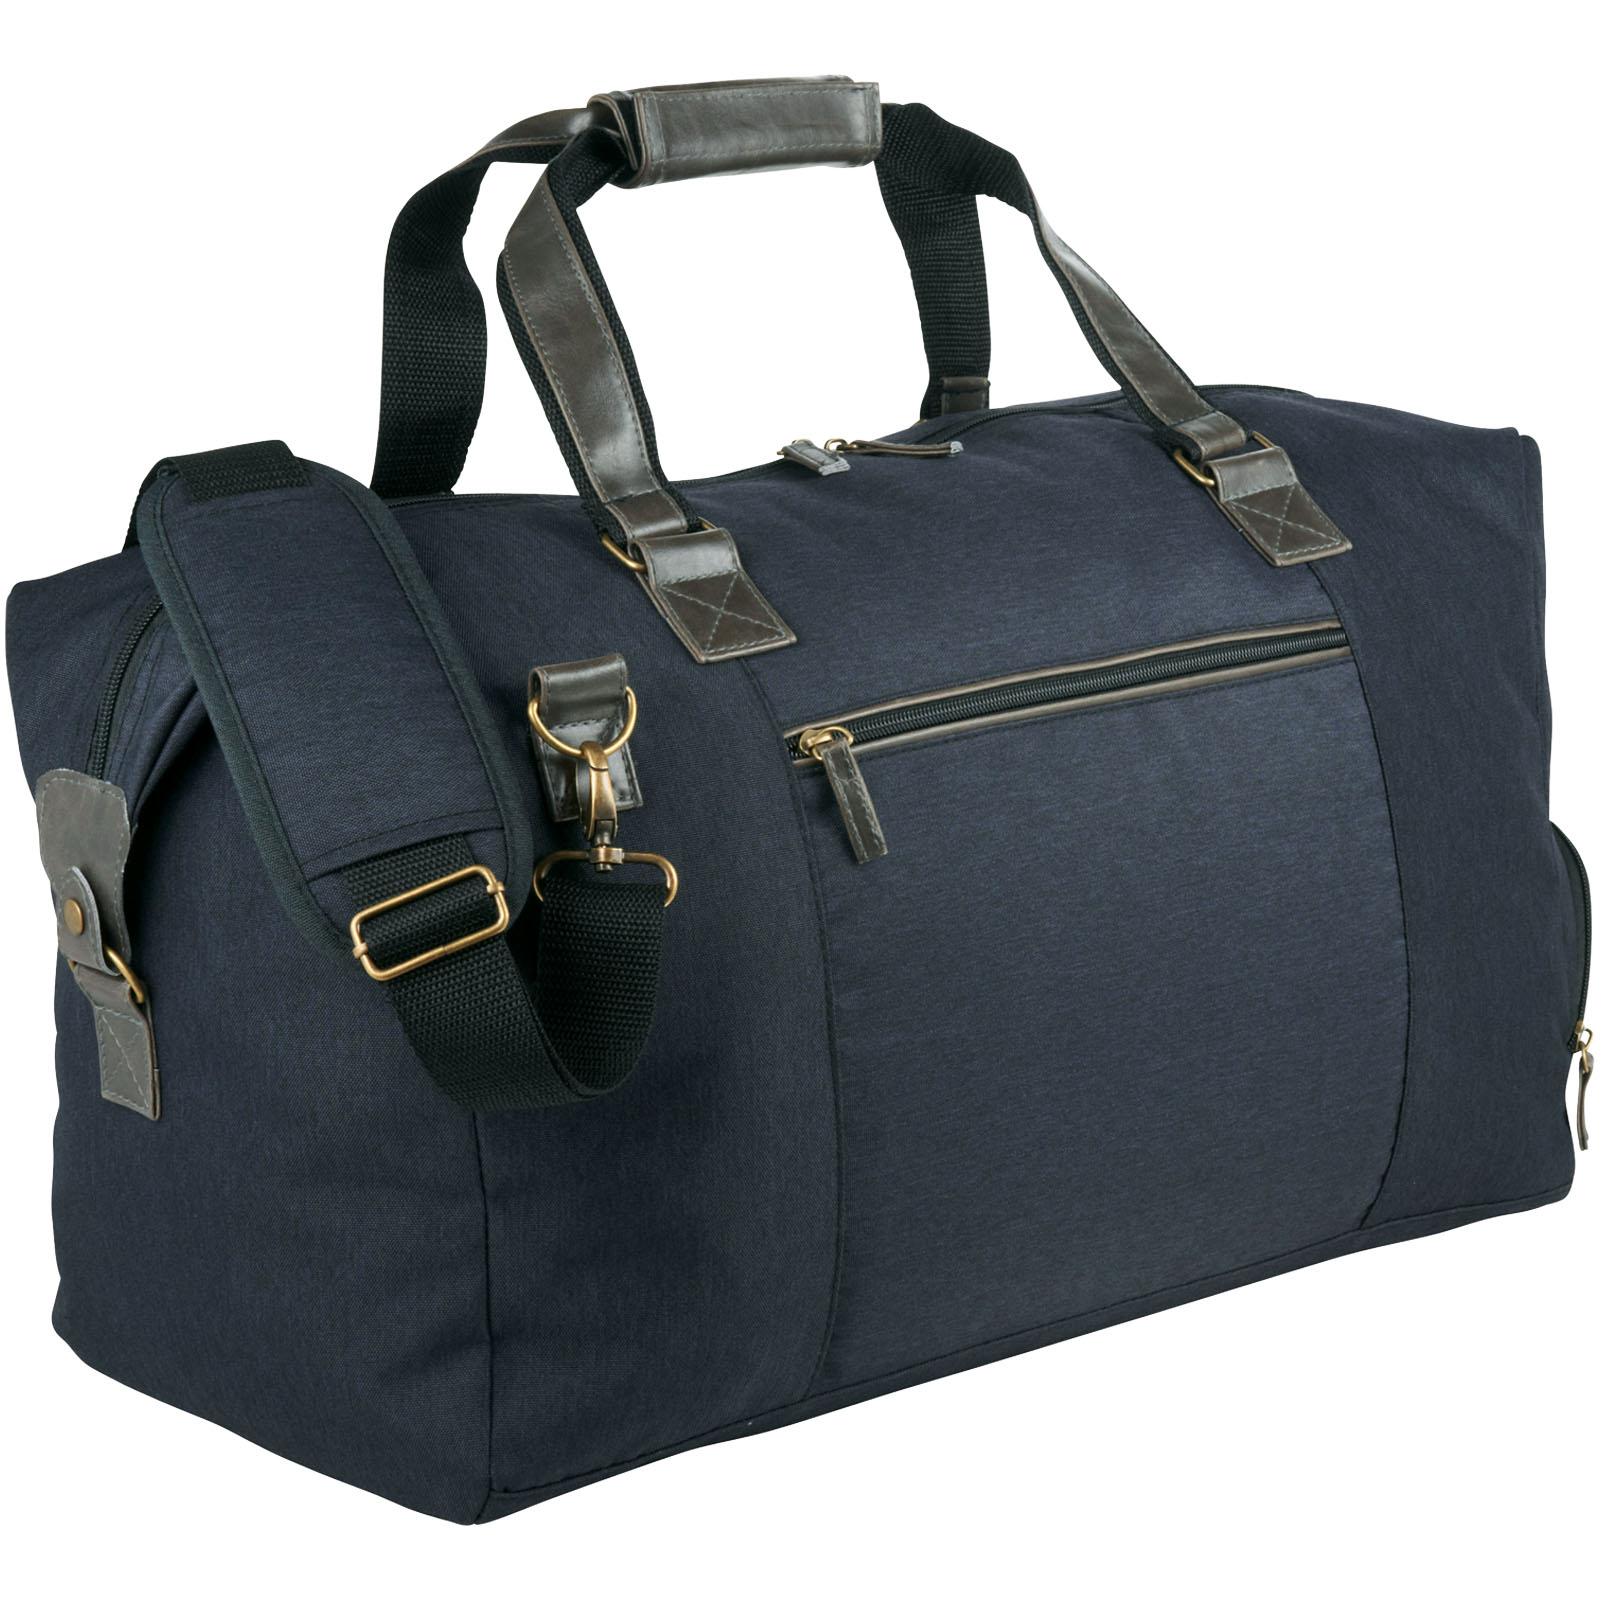 Advertising Travel bags - Capitol duffel bag 35L - 0